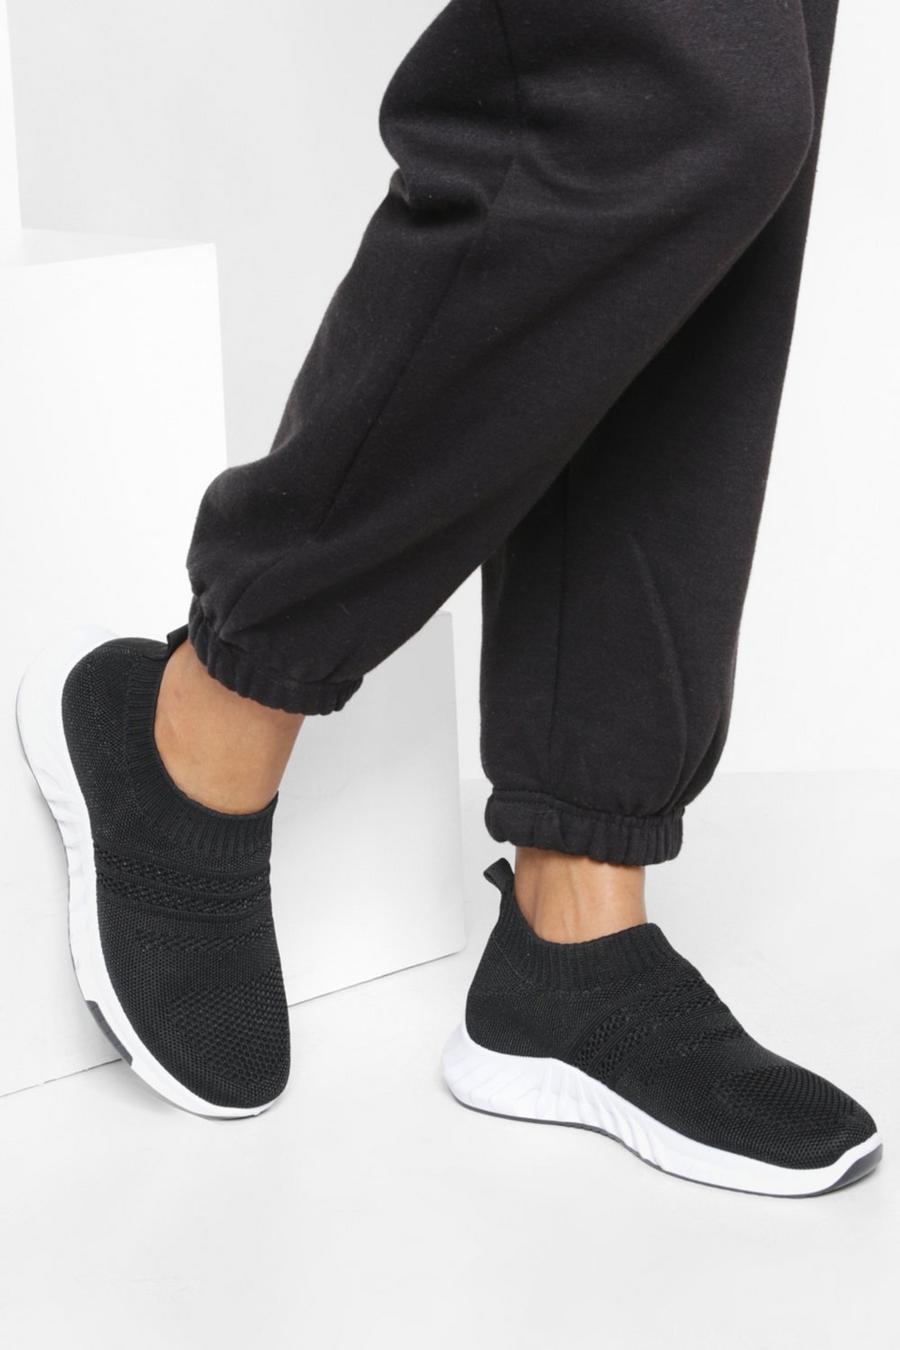 Scarpe da ginnastica basse in maglia a calzata ampia, Black nero